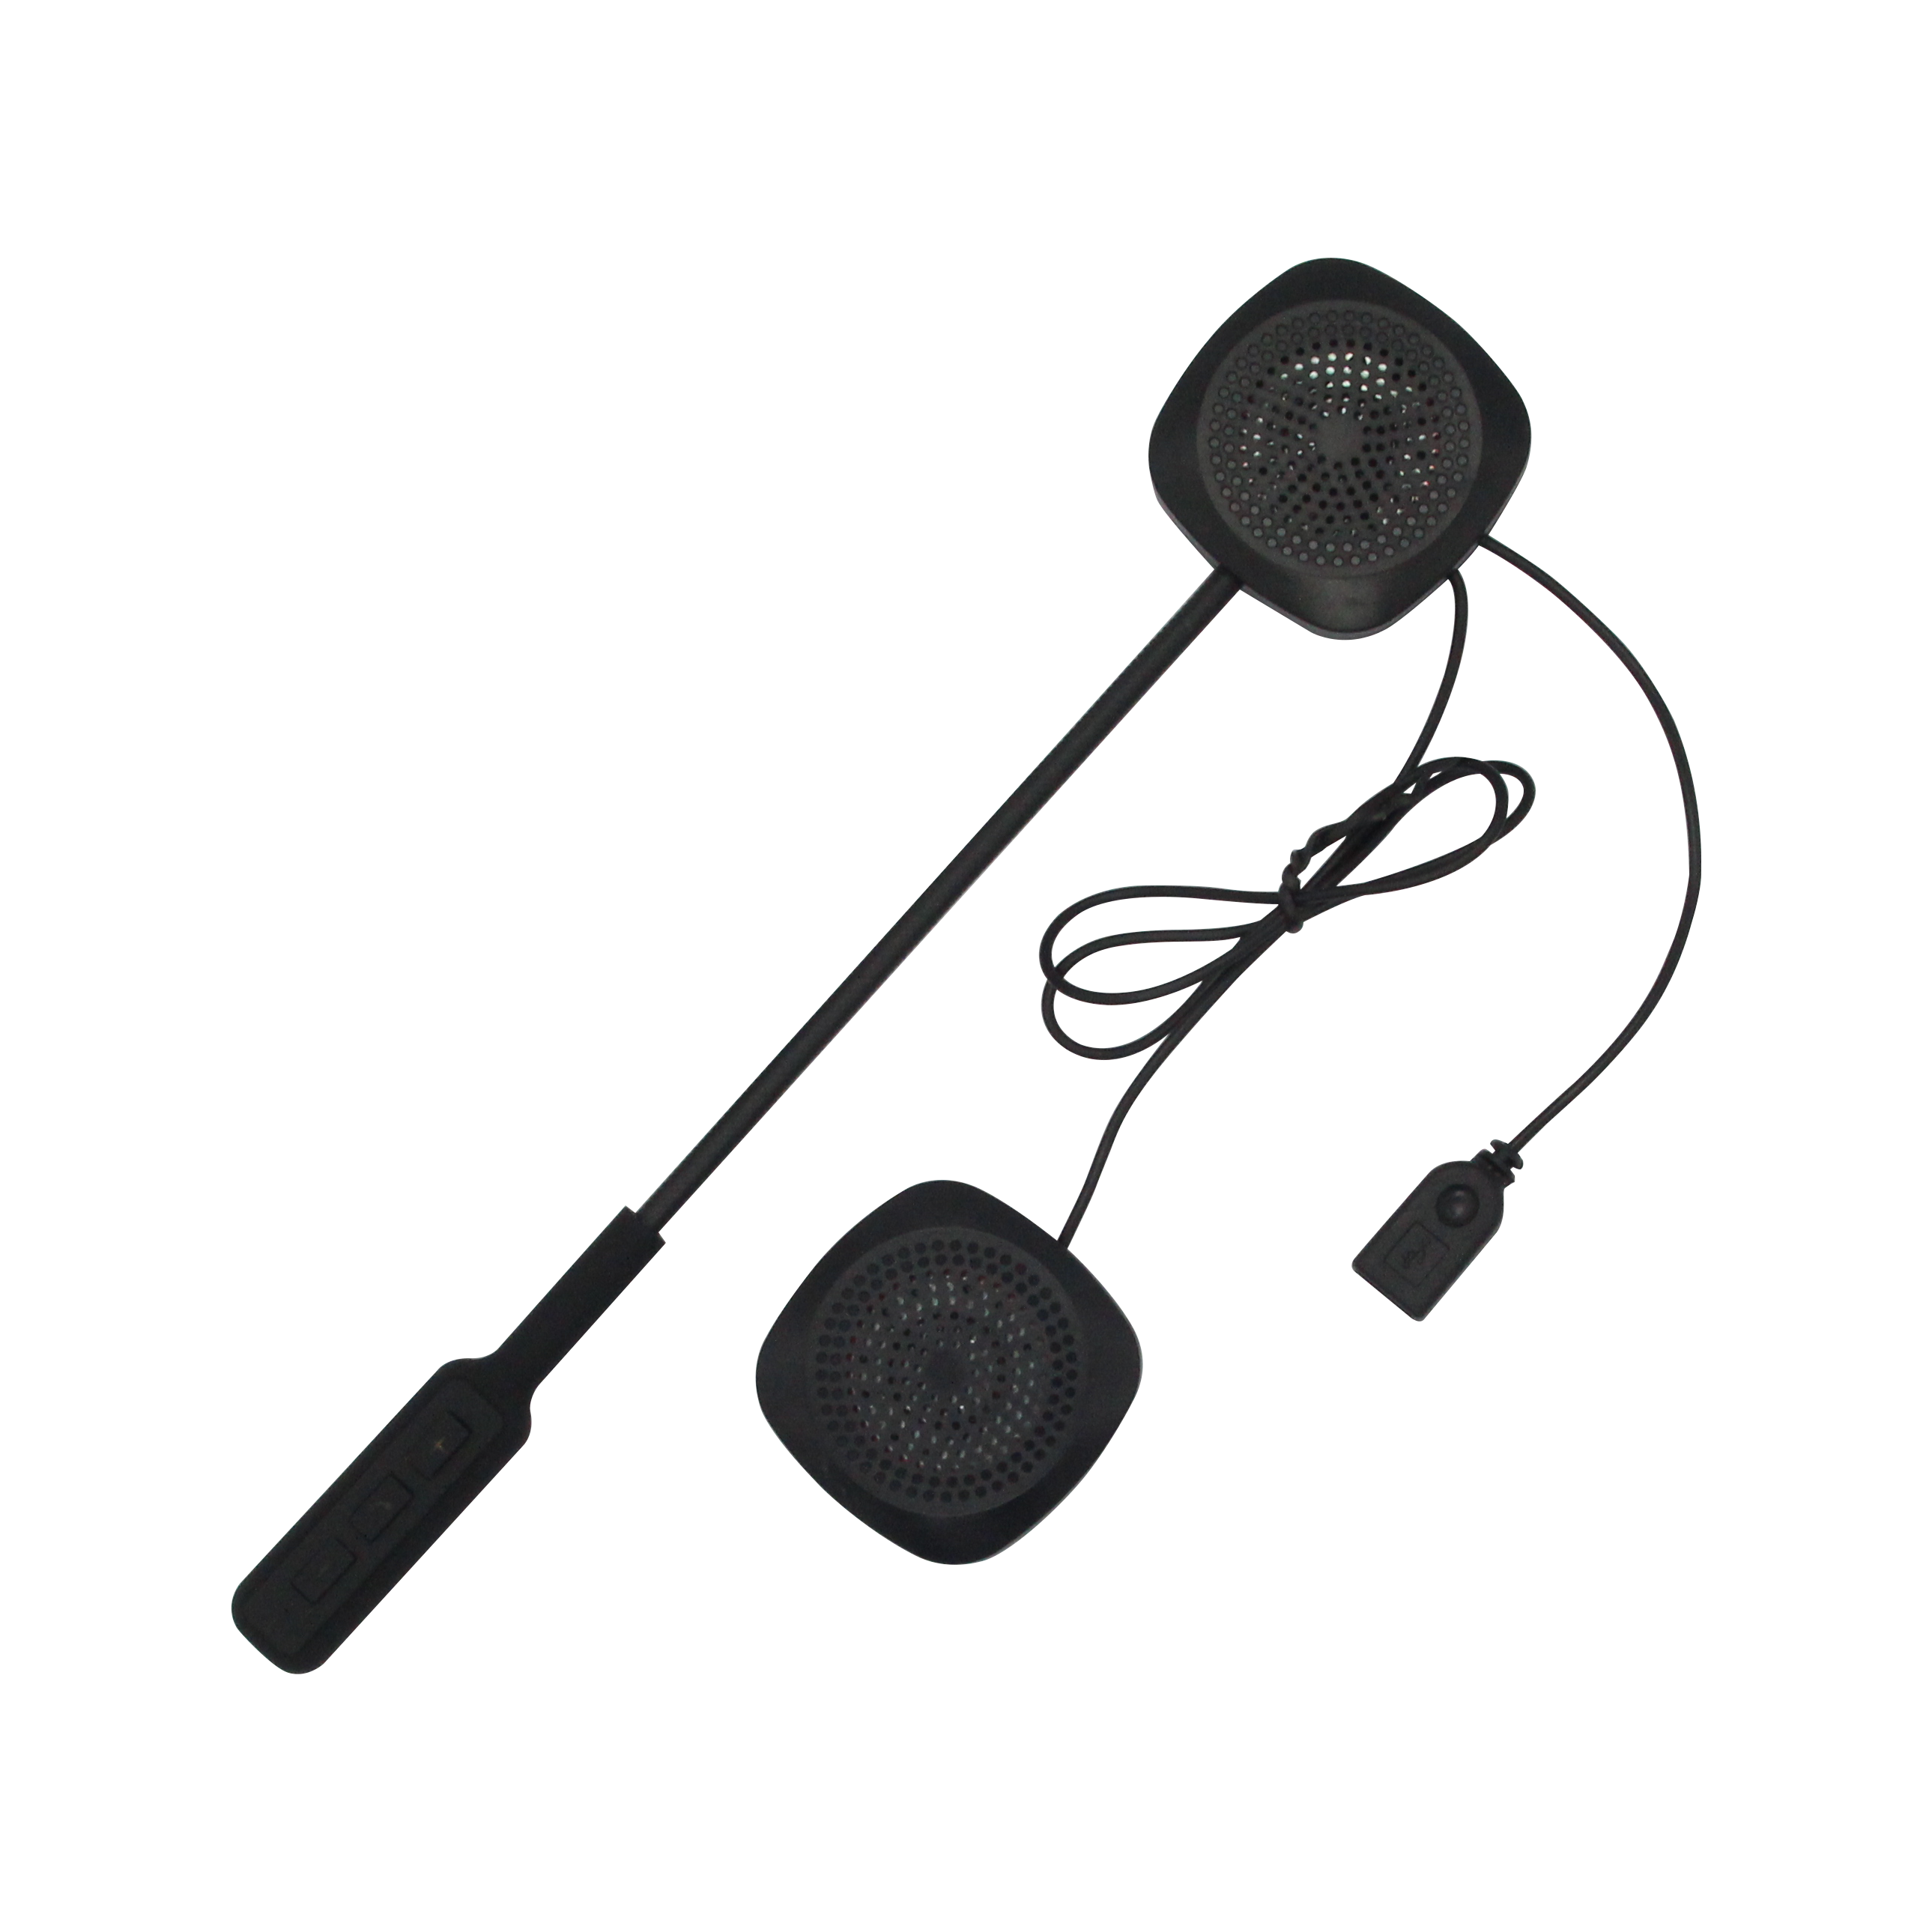 4.2 Edr Bluetooth Hoofdtelefoon Anti-Interferentie Voor Motorhelm Riding Draadloze Handsfree Headset